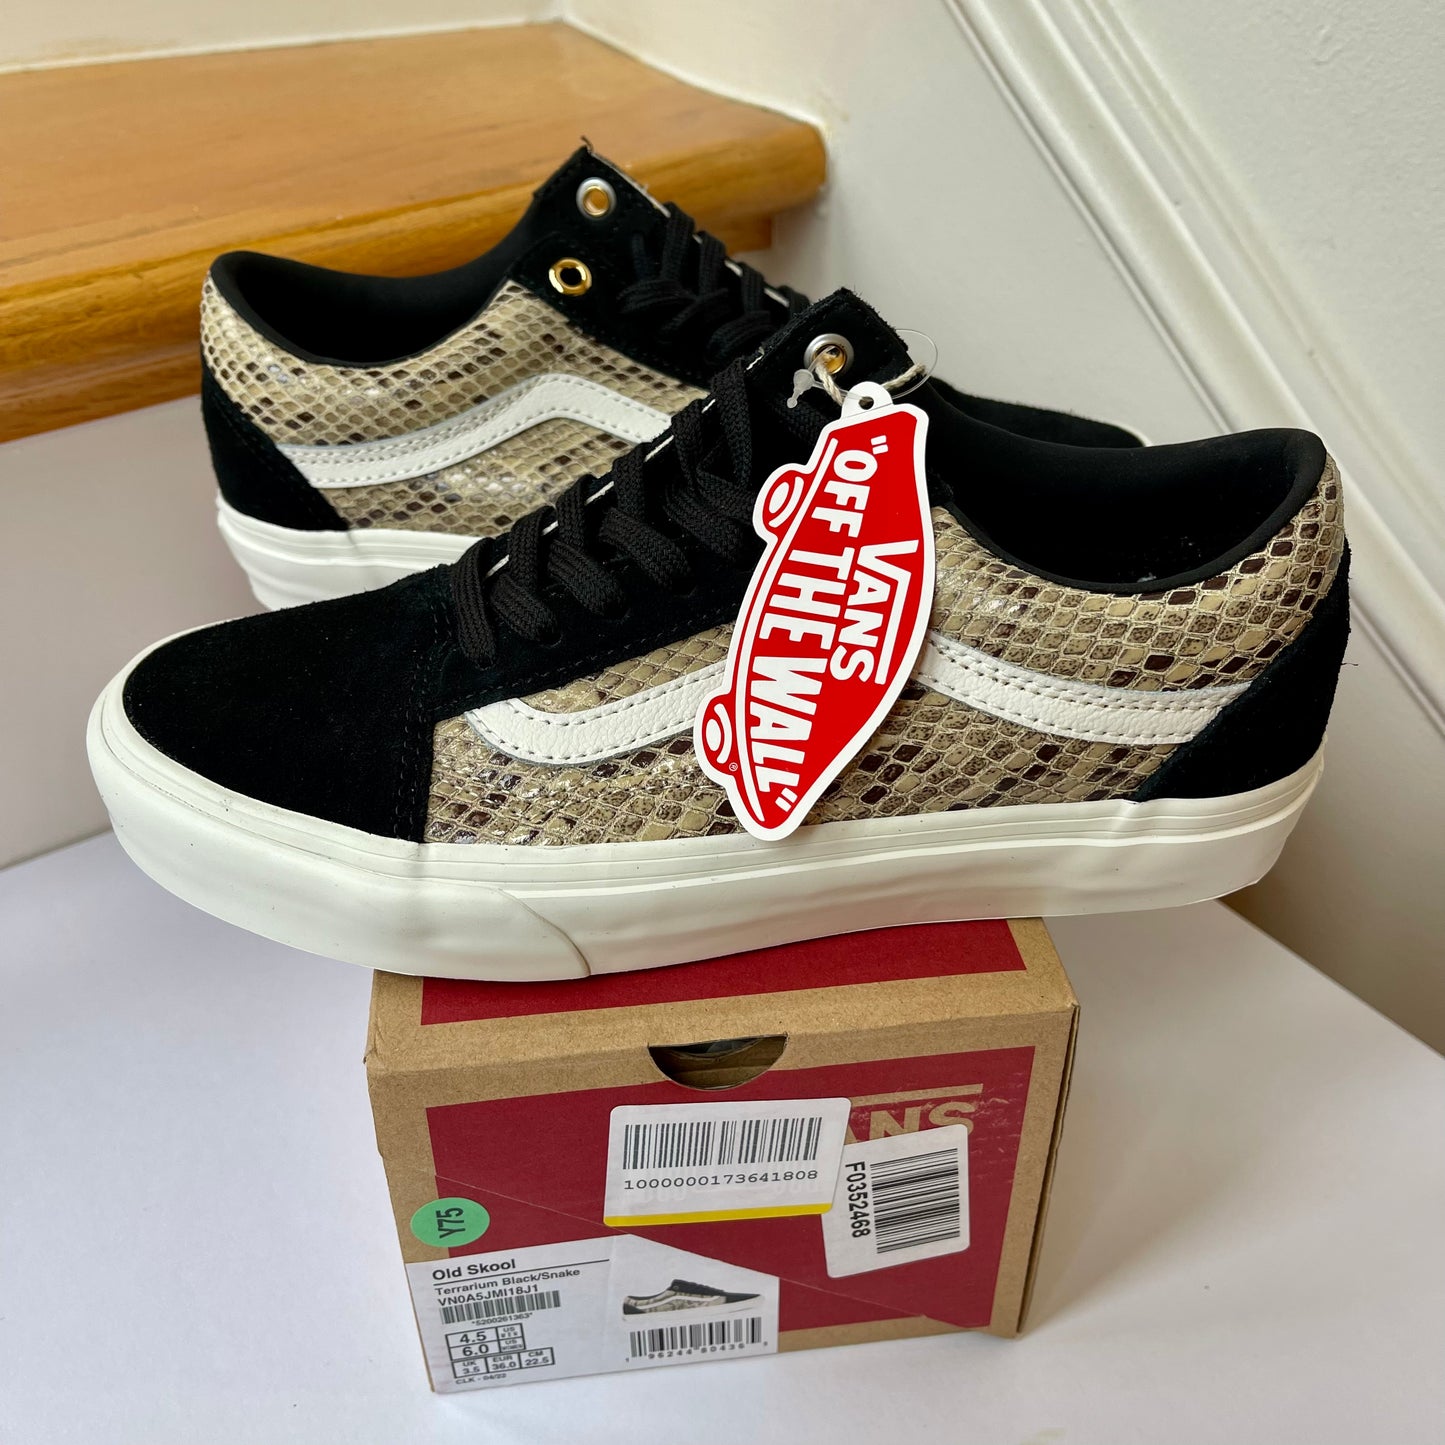 Vans Old Skool Black Suede sneakers with snake skin leather low top shoes